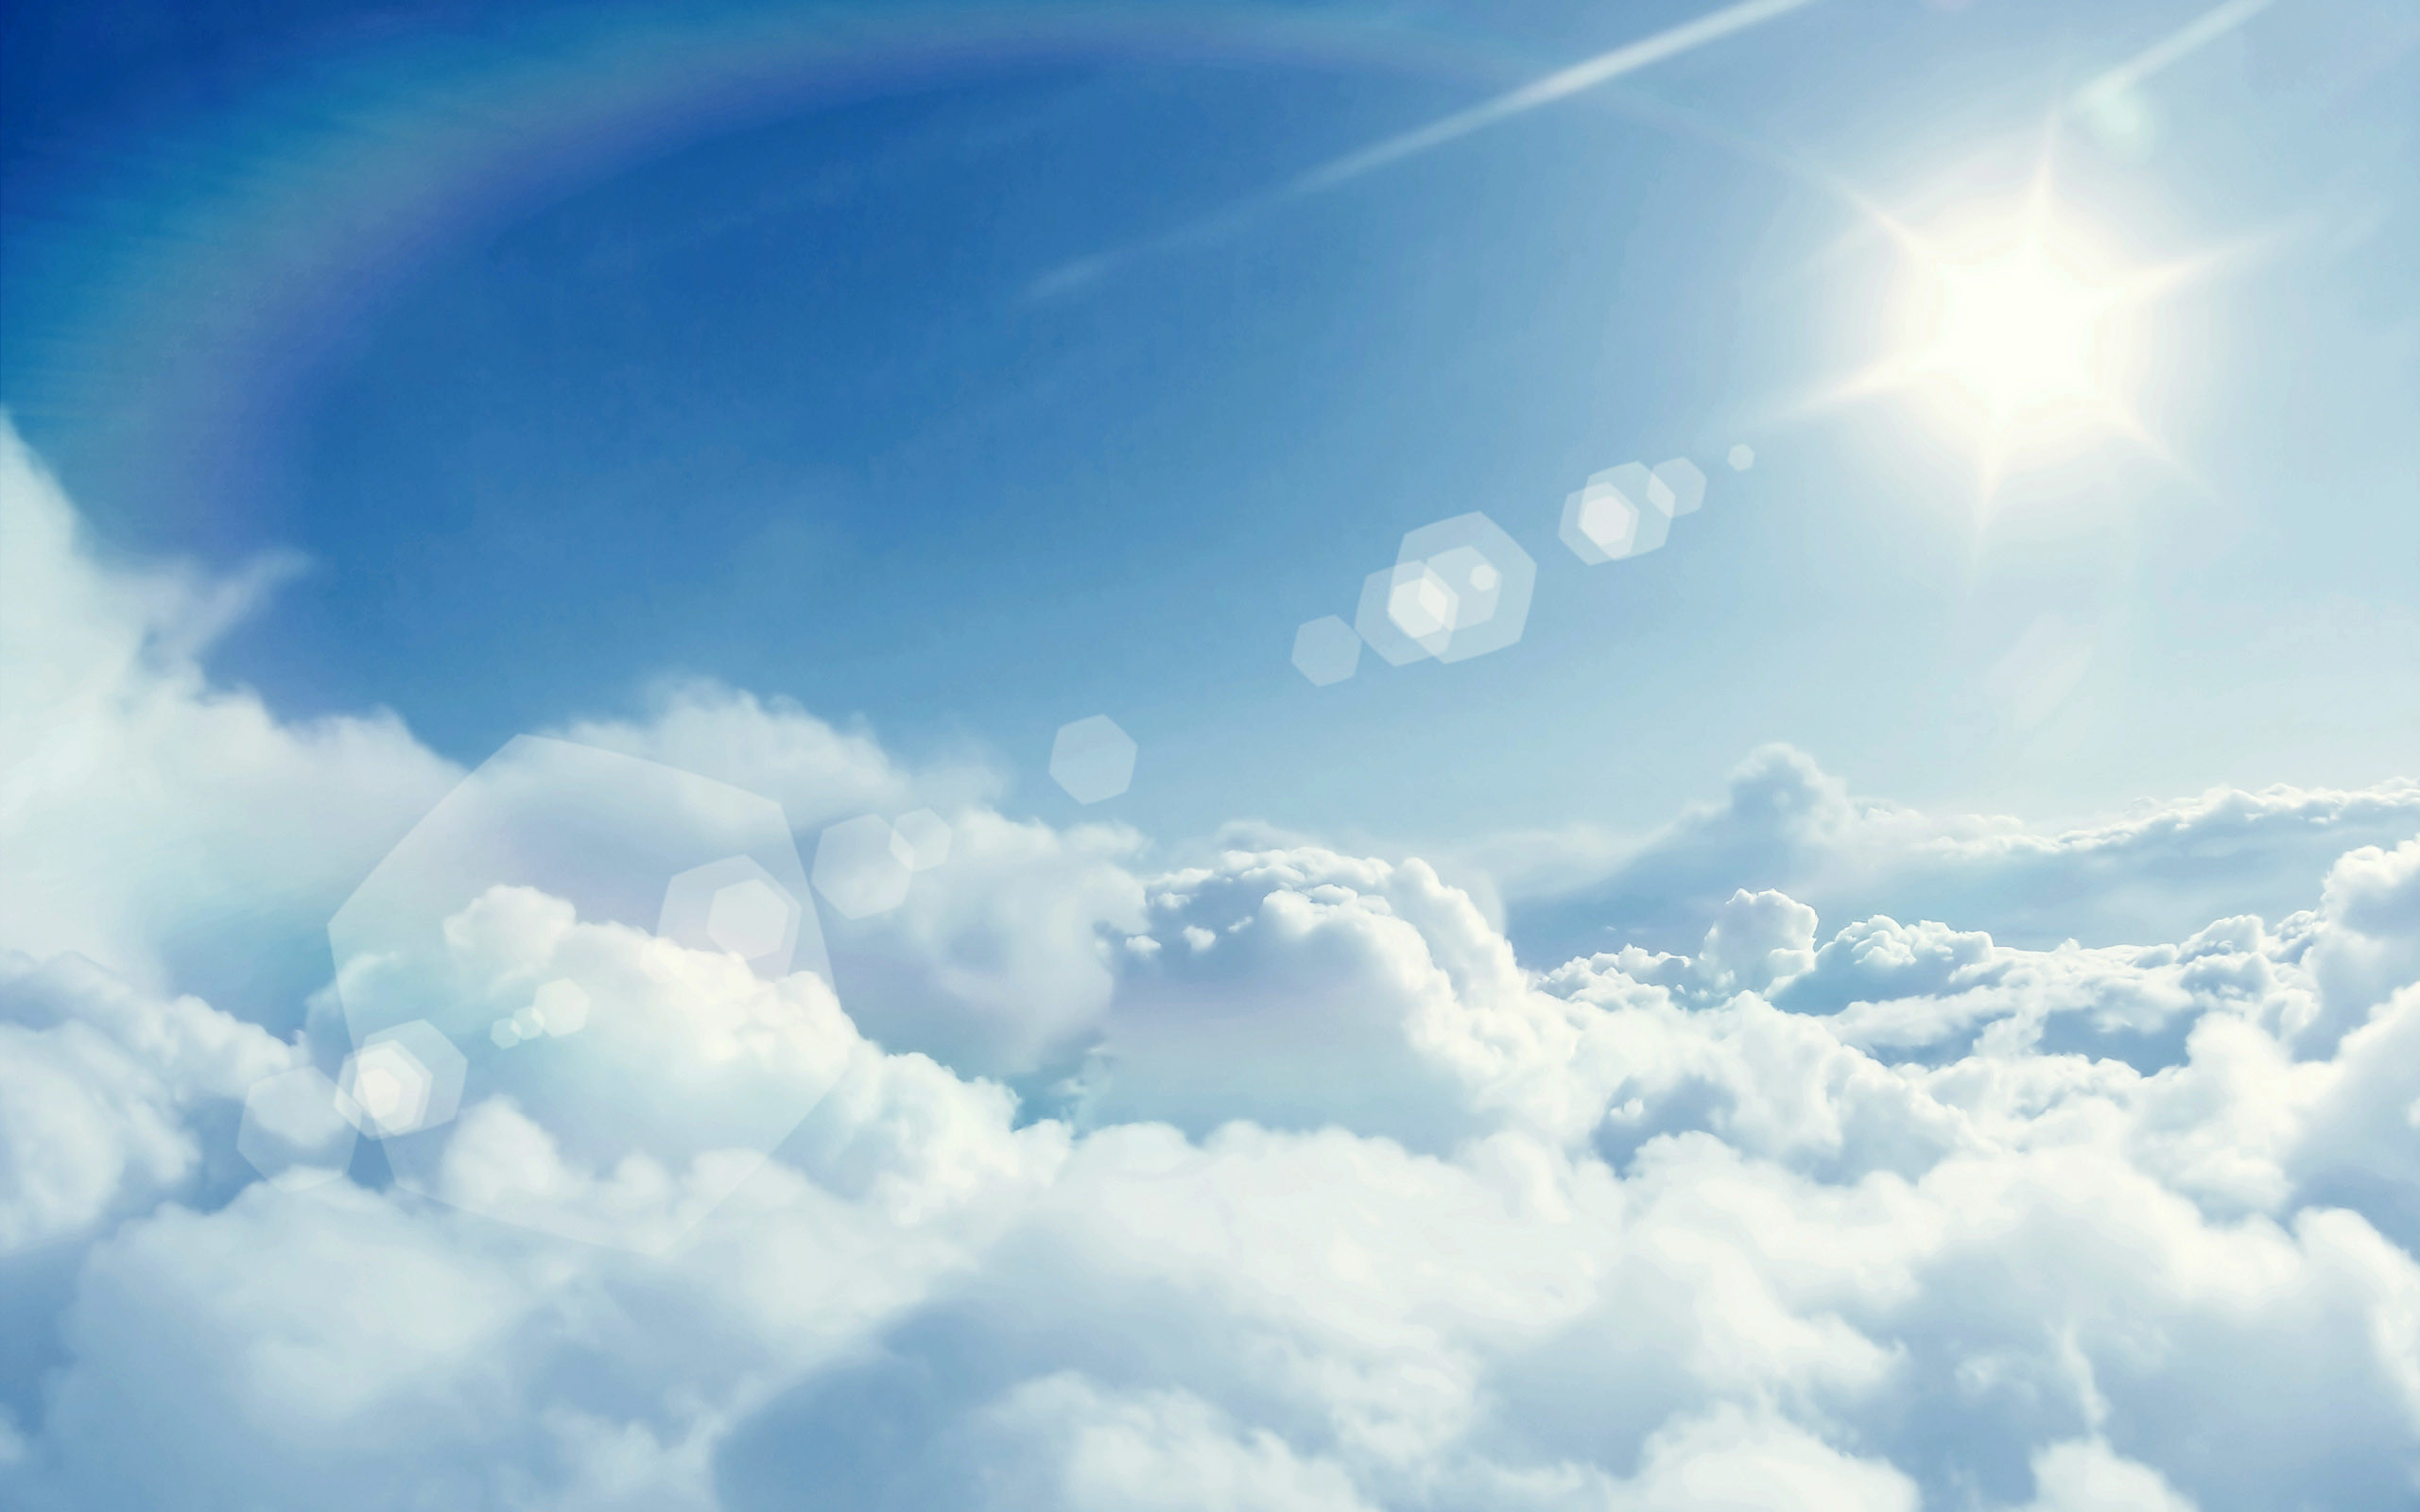 cloud wallpaper,sky,cloud,daytime,blue,atmosphere